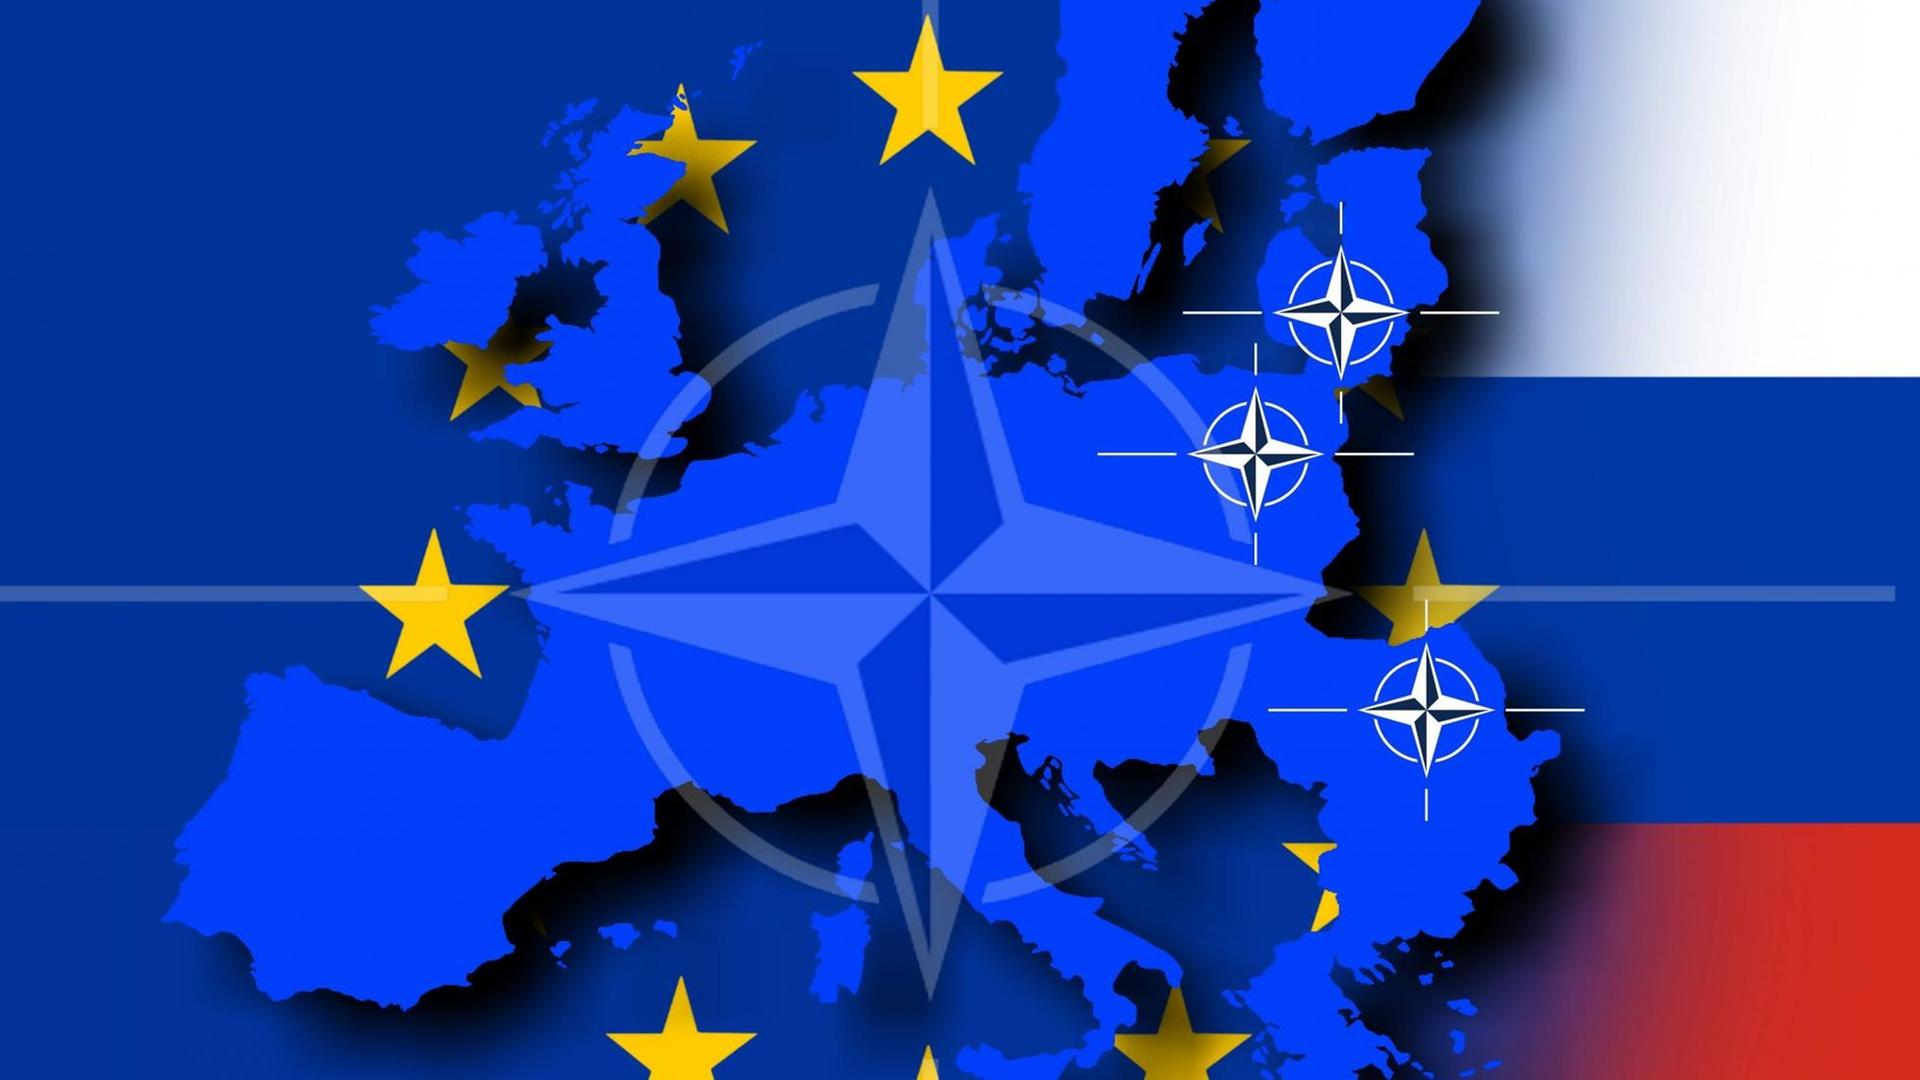 Umrisse der EU mit Nato Emblem und russischer Flagge: Symbolbild zur geplanten NATO OTAN schnellen Eingreiftruppe in den osteuropäischen Ländern des Baltikums.